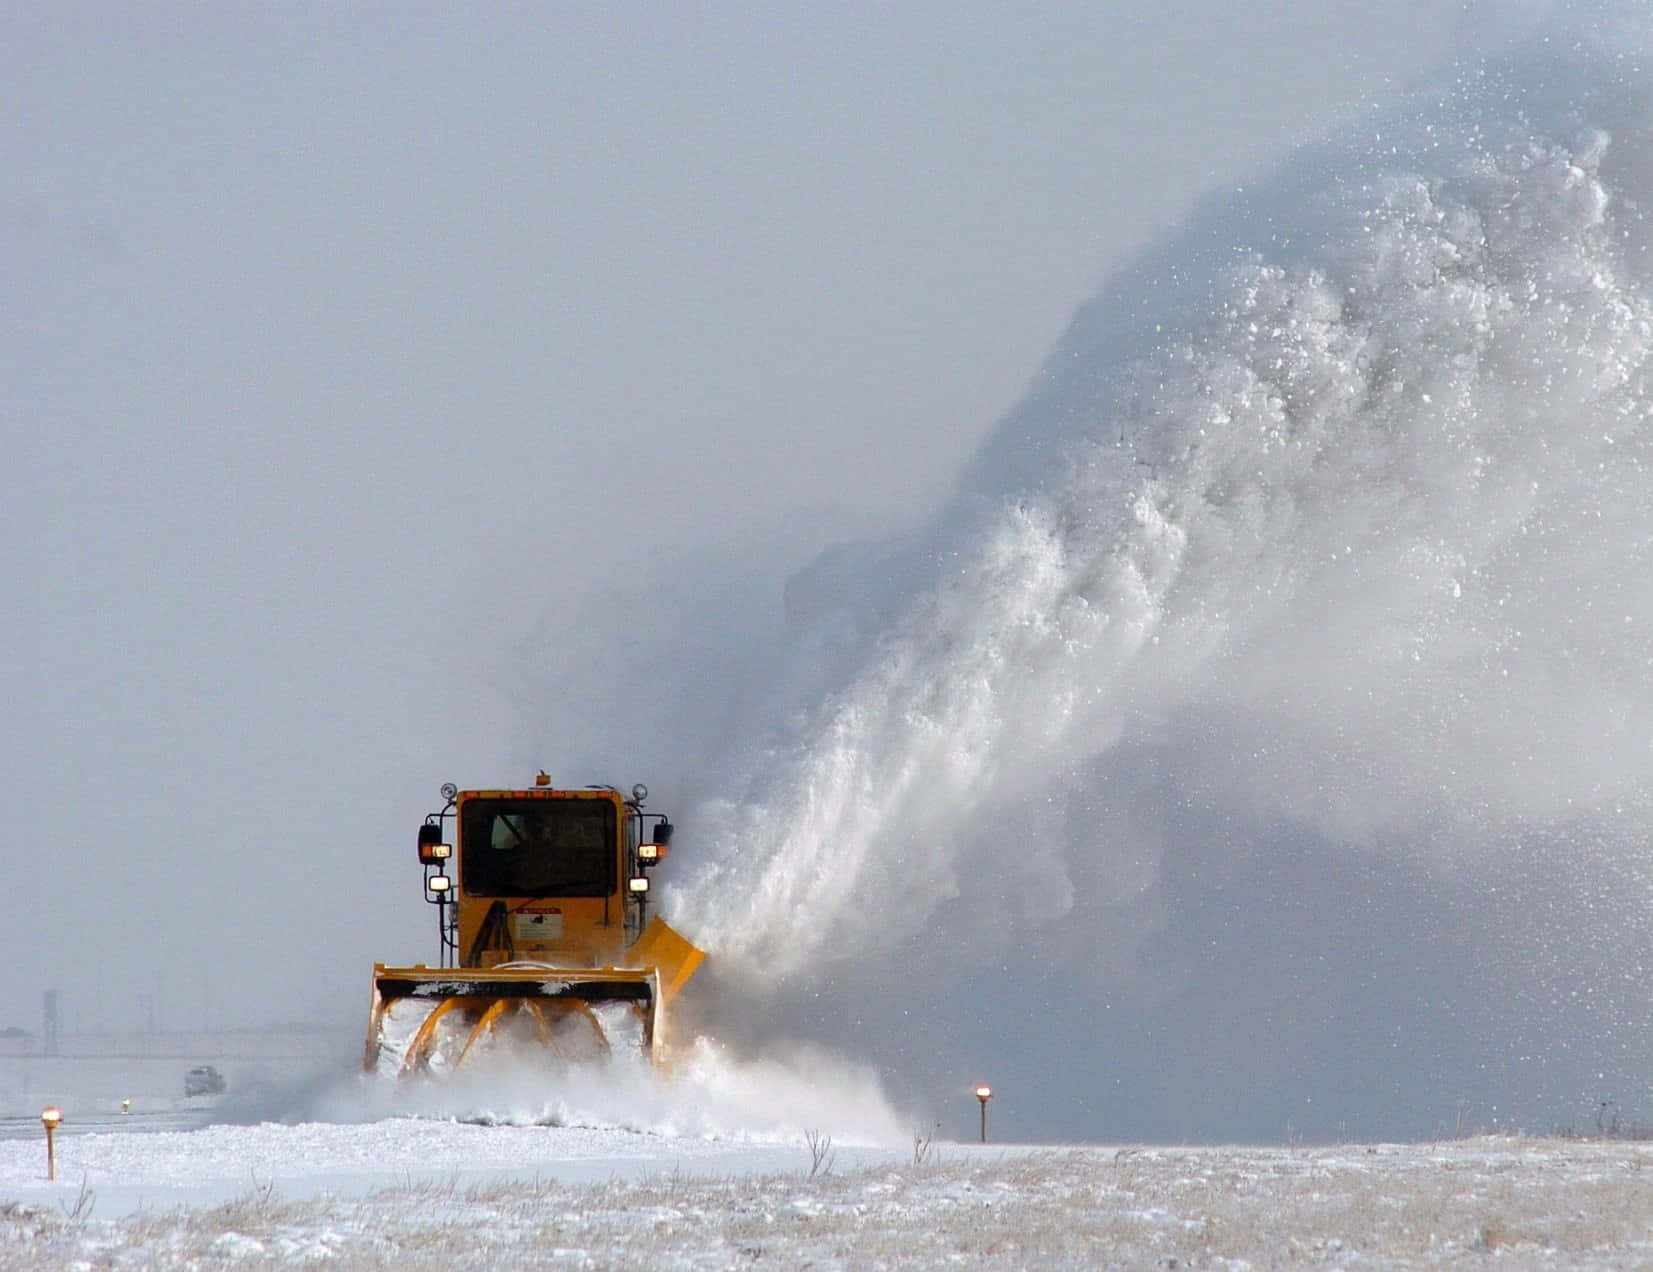 Heavy-duty snowplow clearing a snowy road Wallpaper